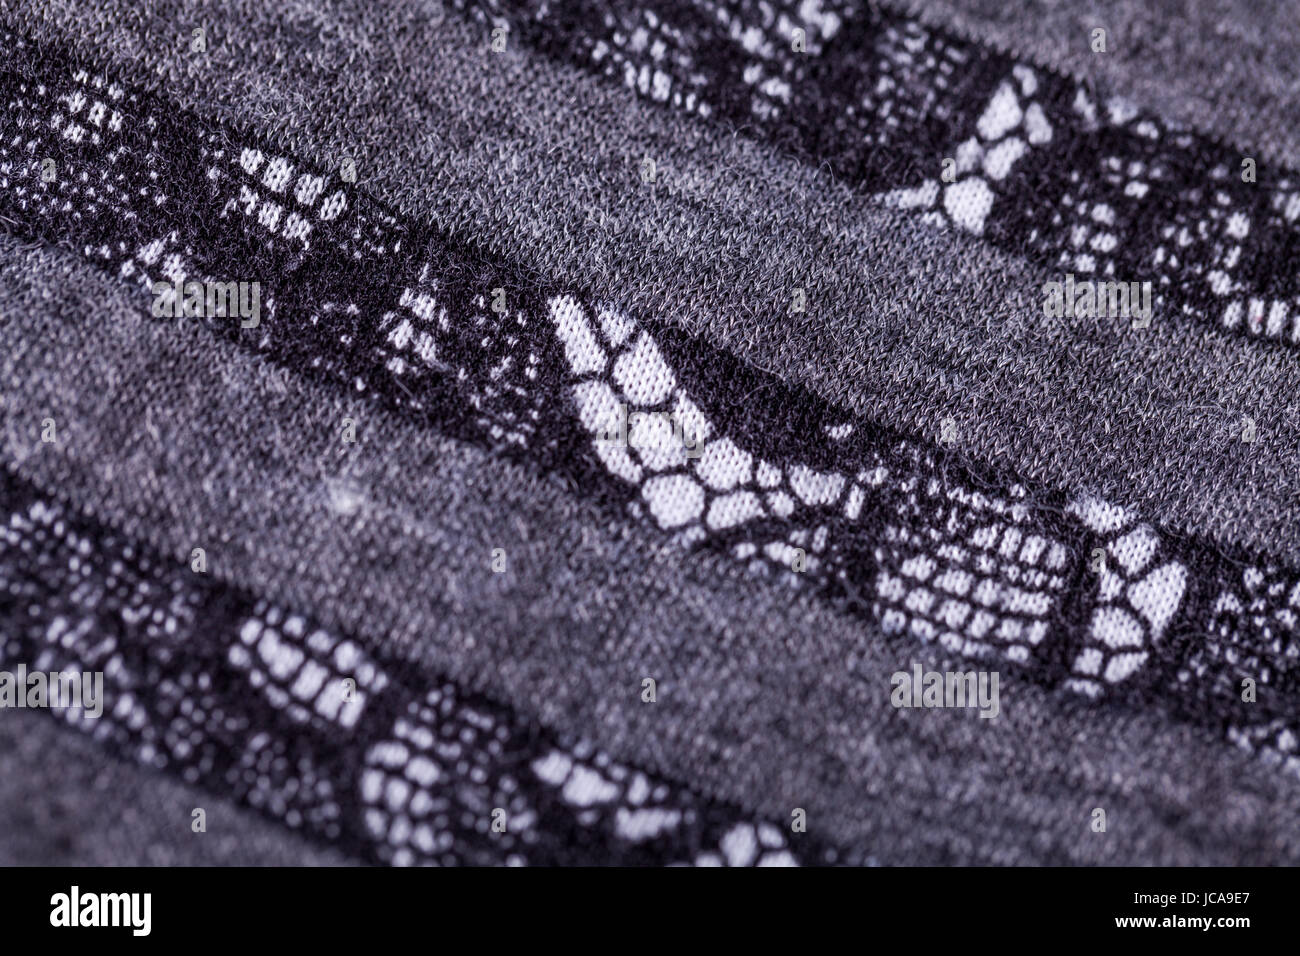 grauer antrazit farbener Stoff aus Wolle Baumwolle mit Spitze Struktur textur als Nahaufnahme Stock Photo